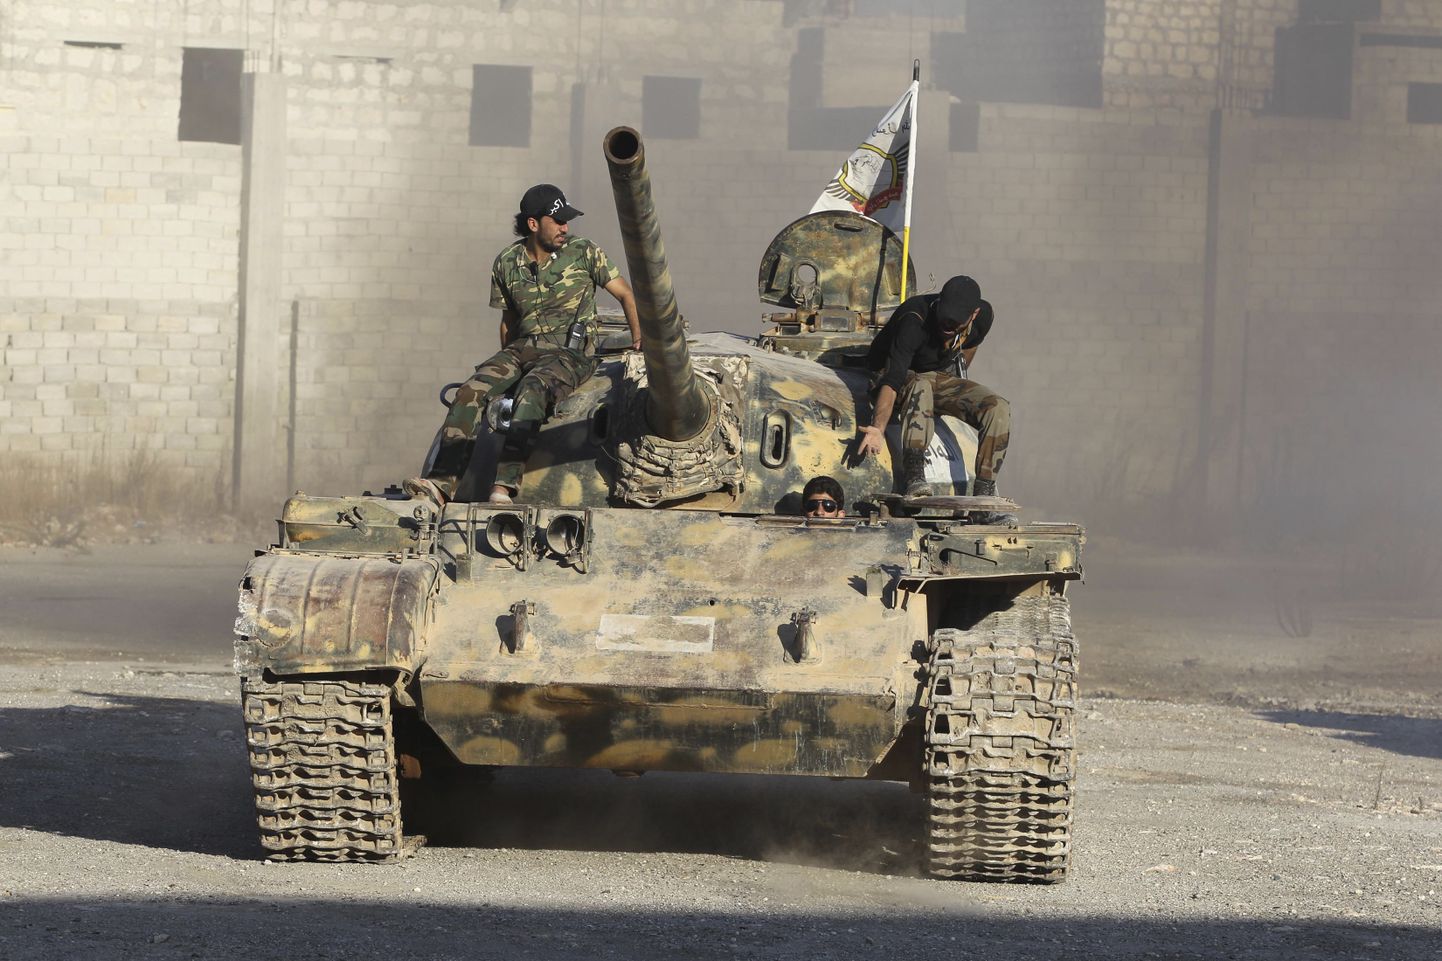 Vaba Süüria Armee võitlejad on võtnud oma tankiga suuna Aleppo läheduses asuvale Sheikh Saeedile.